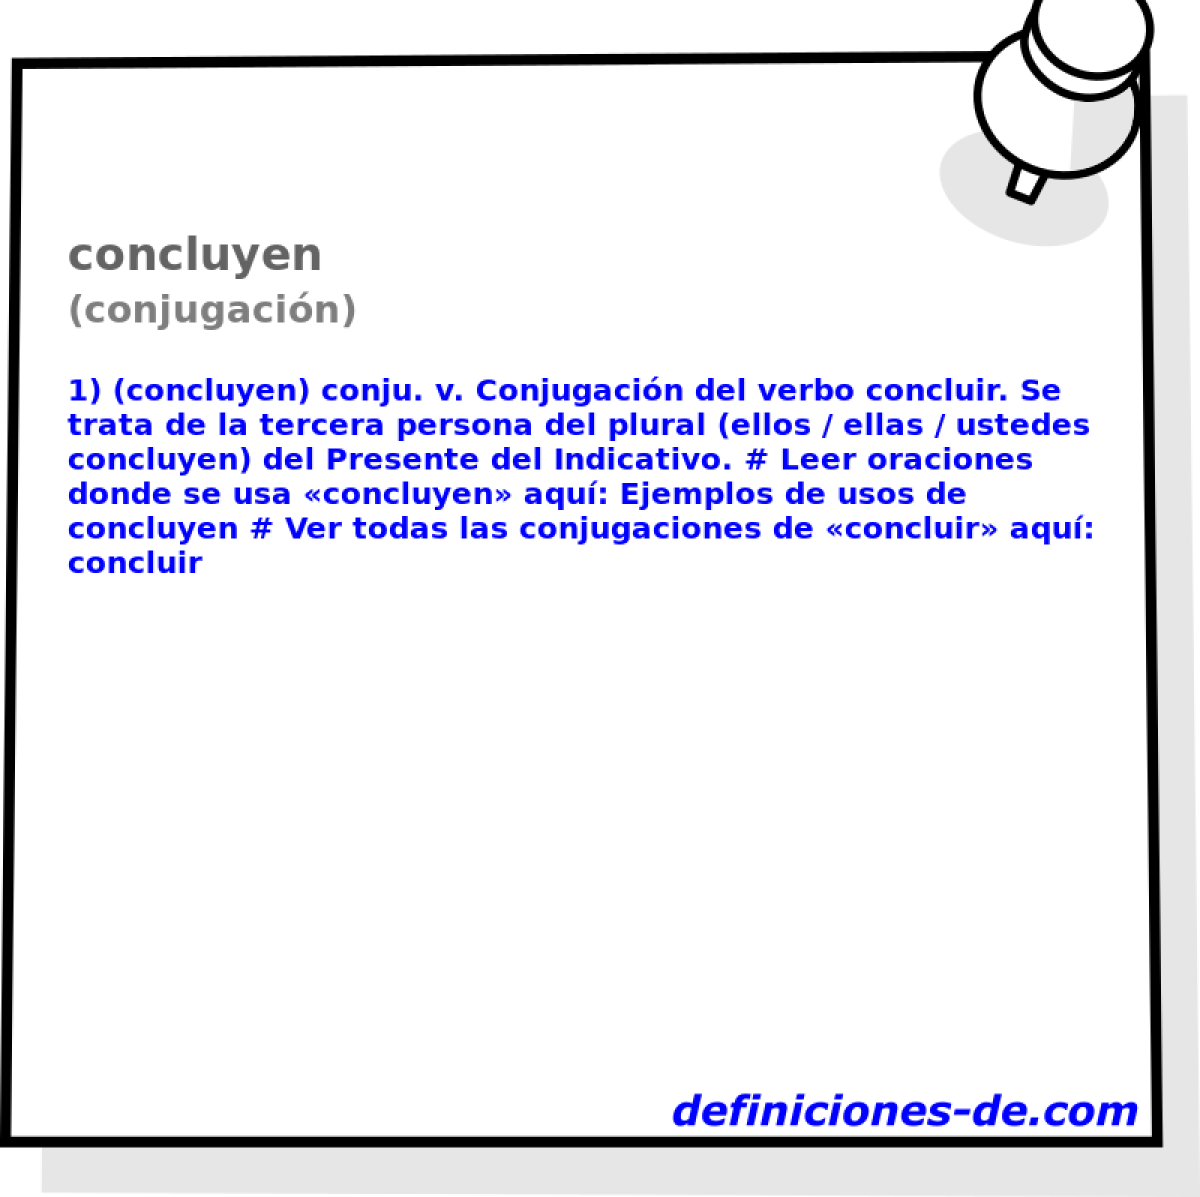 concluyen (conjugacin)